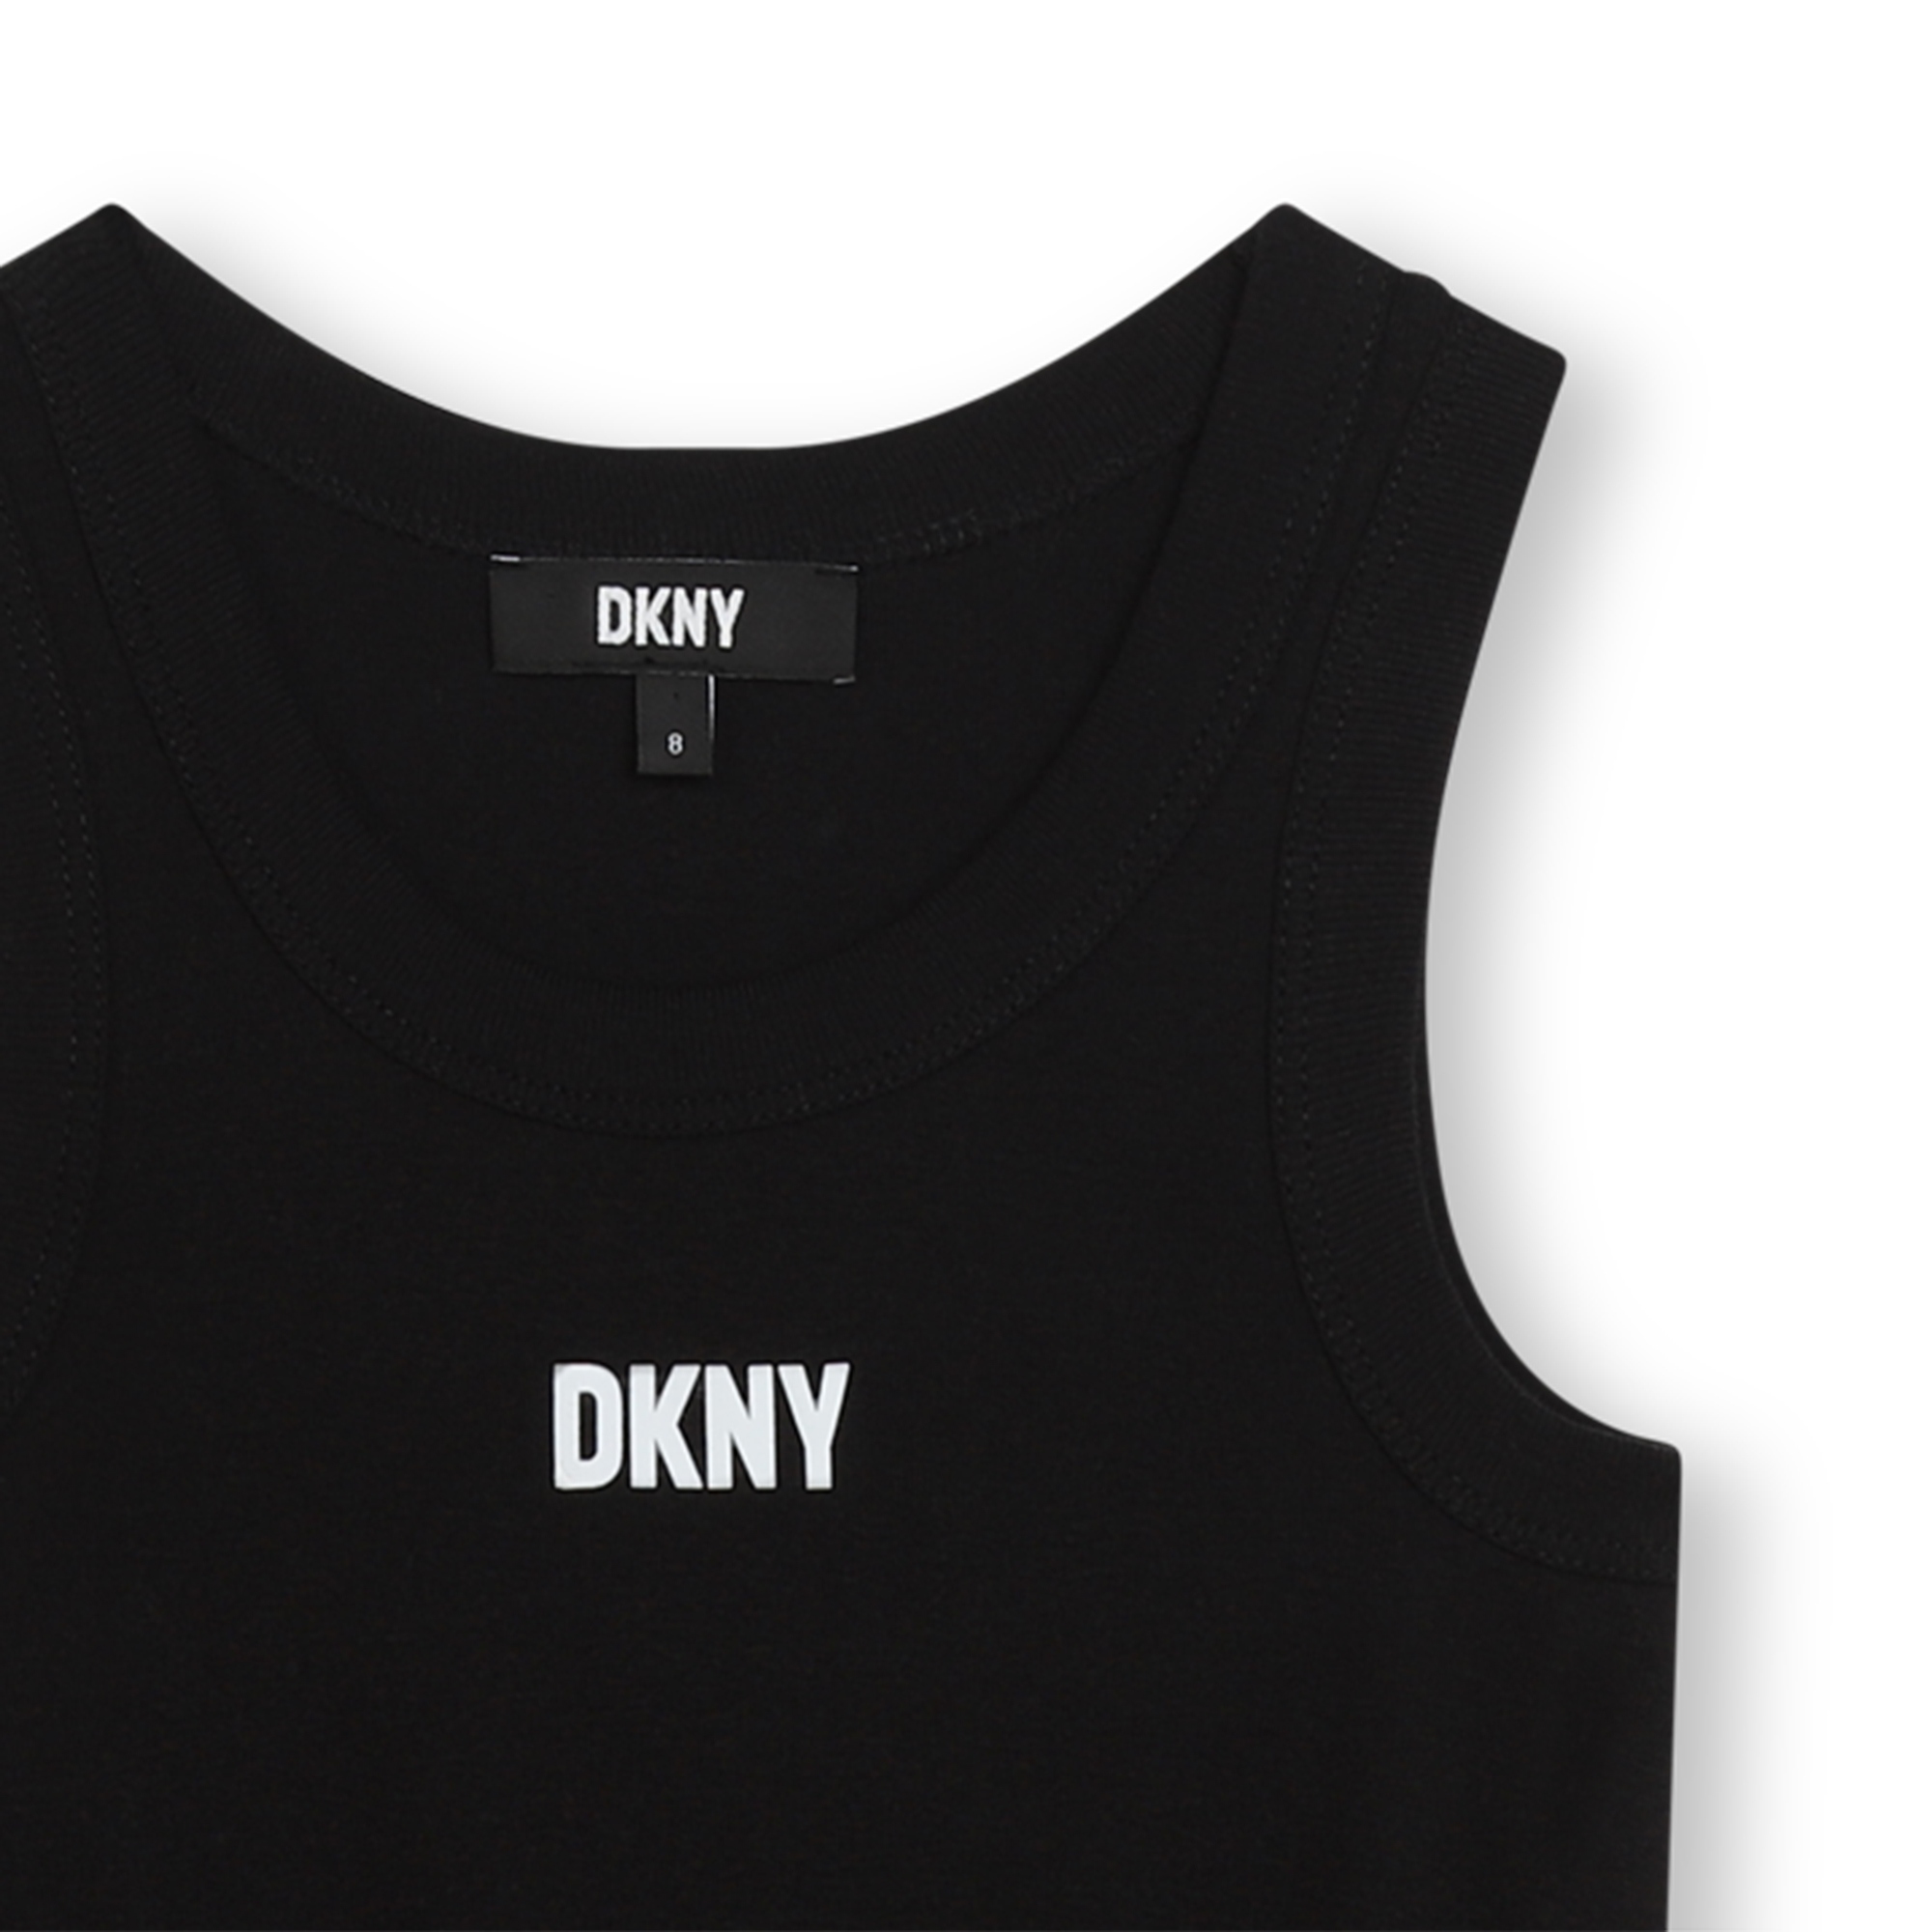 Sleeveless dress DKNY for GIRL